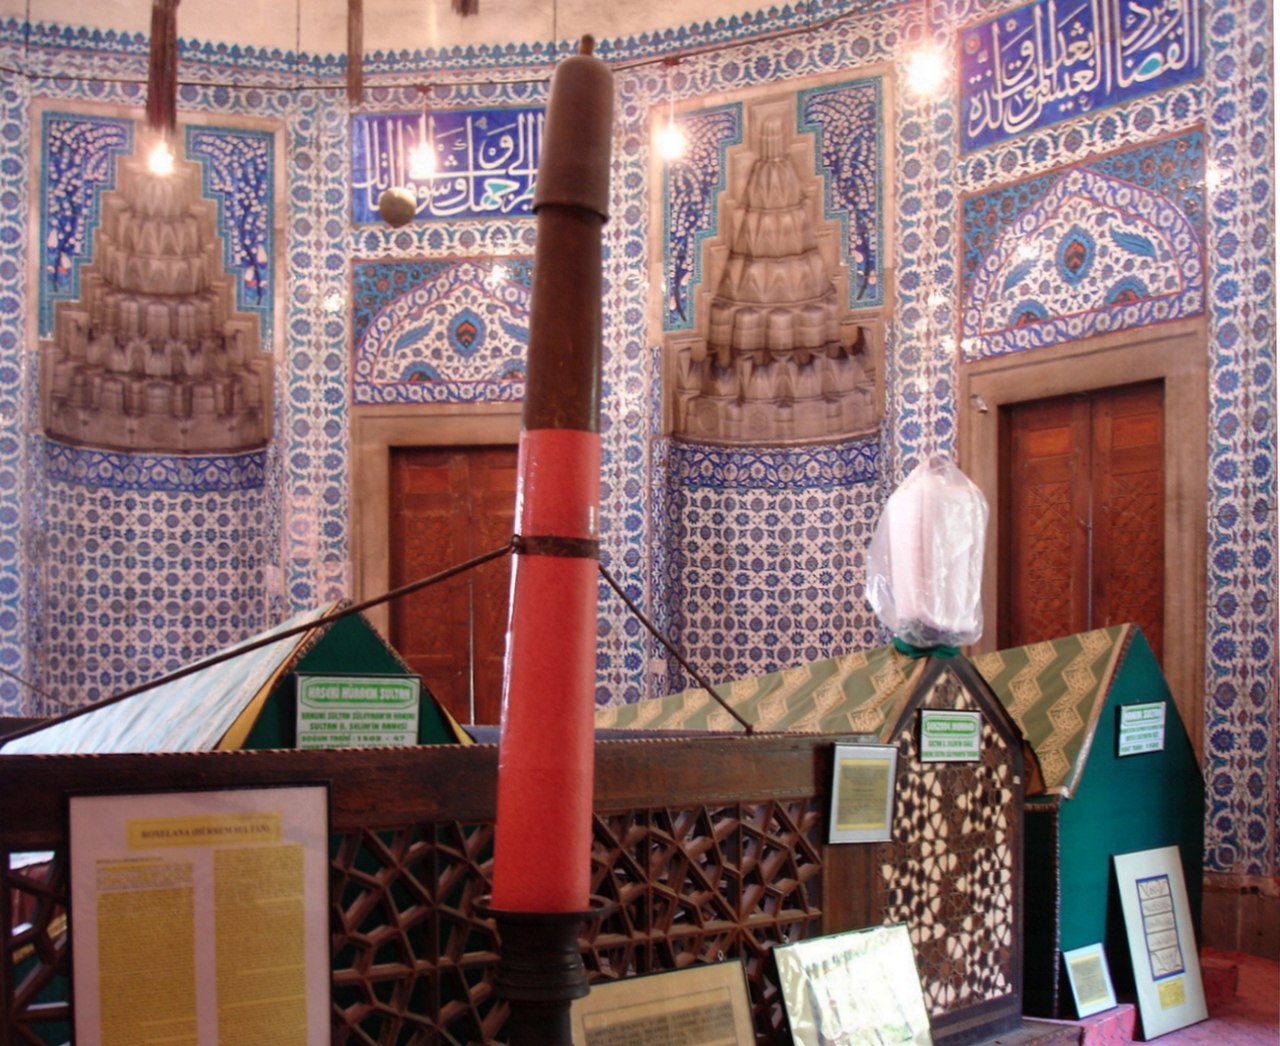 أقيم مسجد على قطعةِ أرضٍ مستطيلة الشكل ، طولُها 40 م، وعرضُها 14 م. أوجدْ محيطَ قطعةِ الأرضِ.